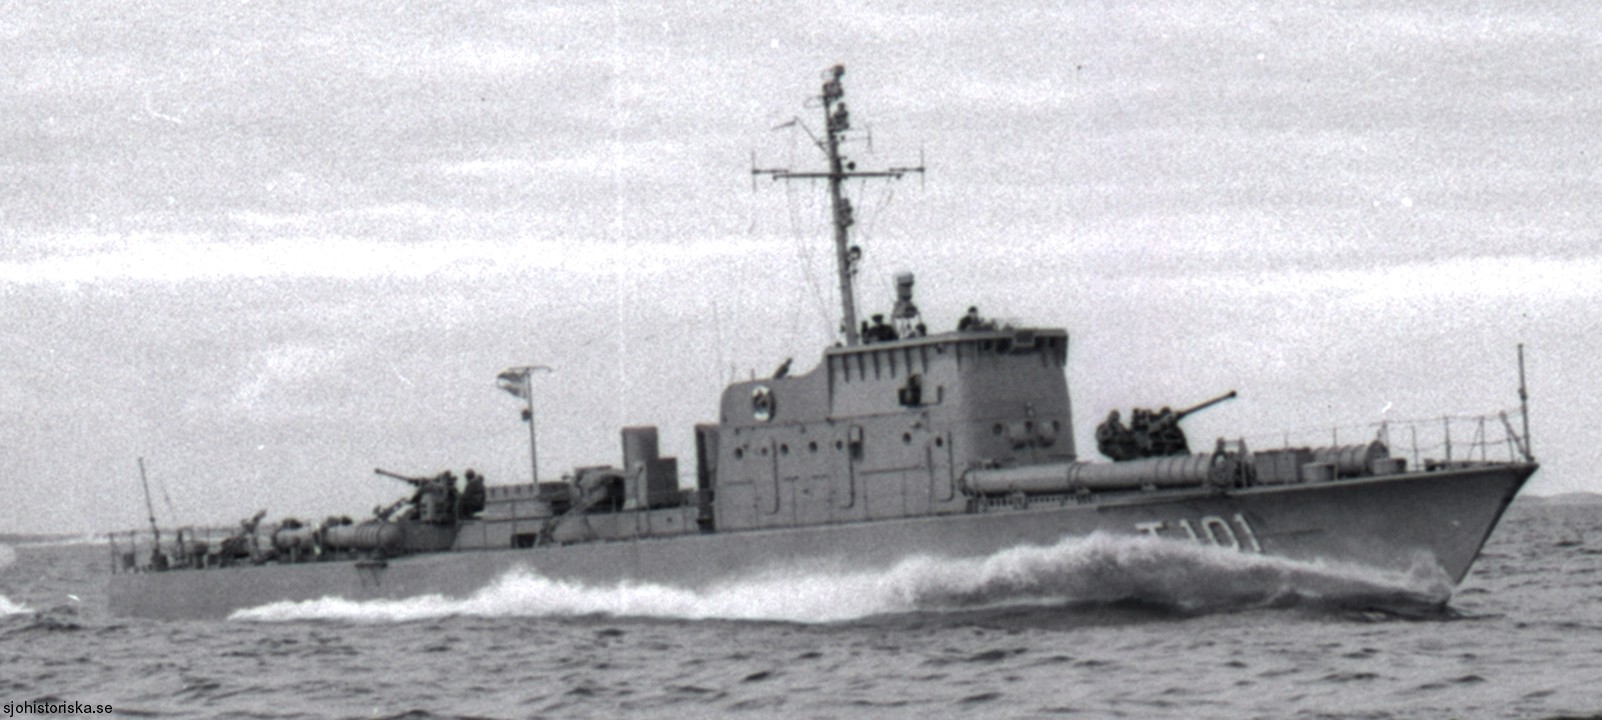 t101 perseus hms hswms fast attack craft torpedo boat vessel swedish navy svenska marinen 08